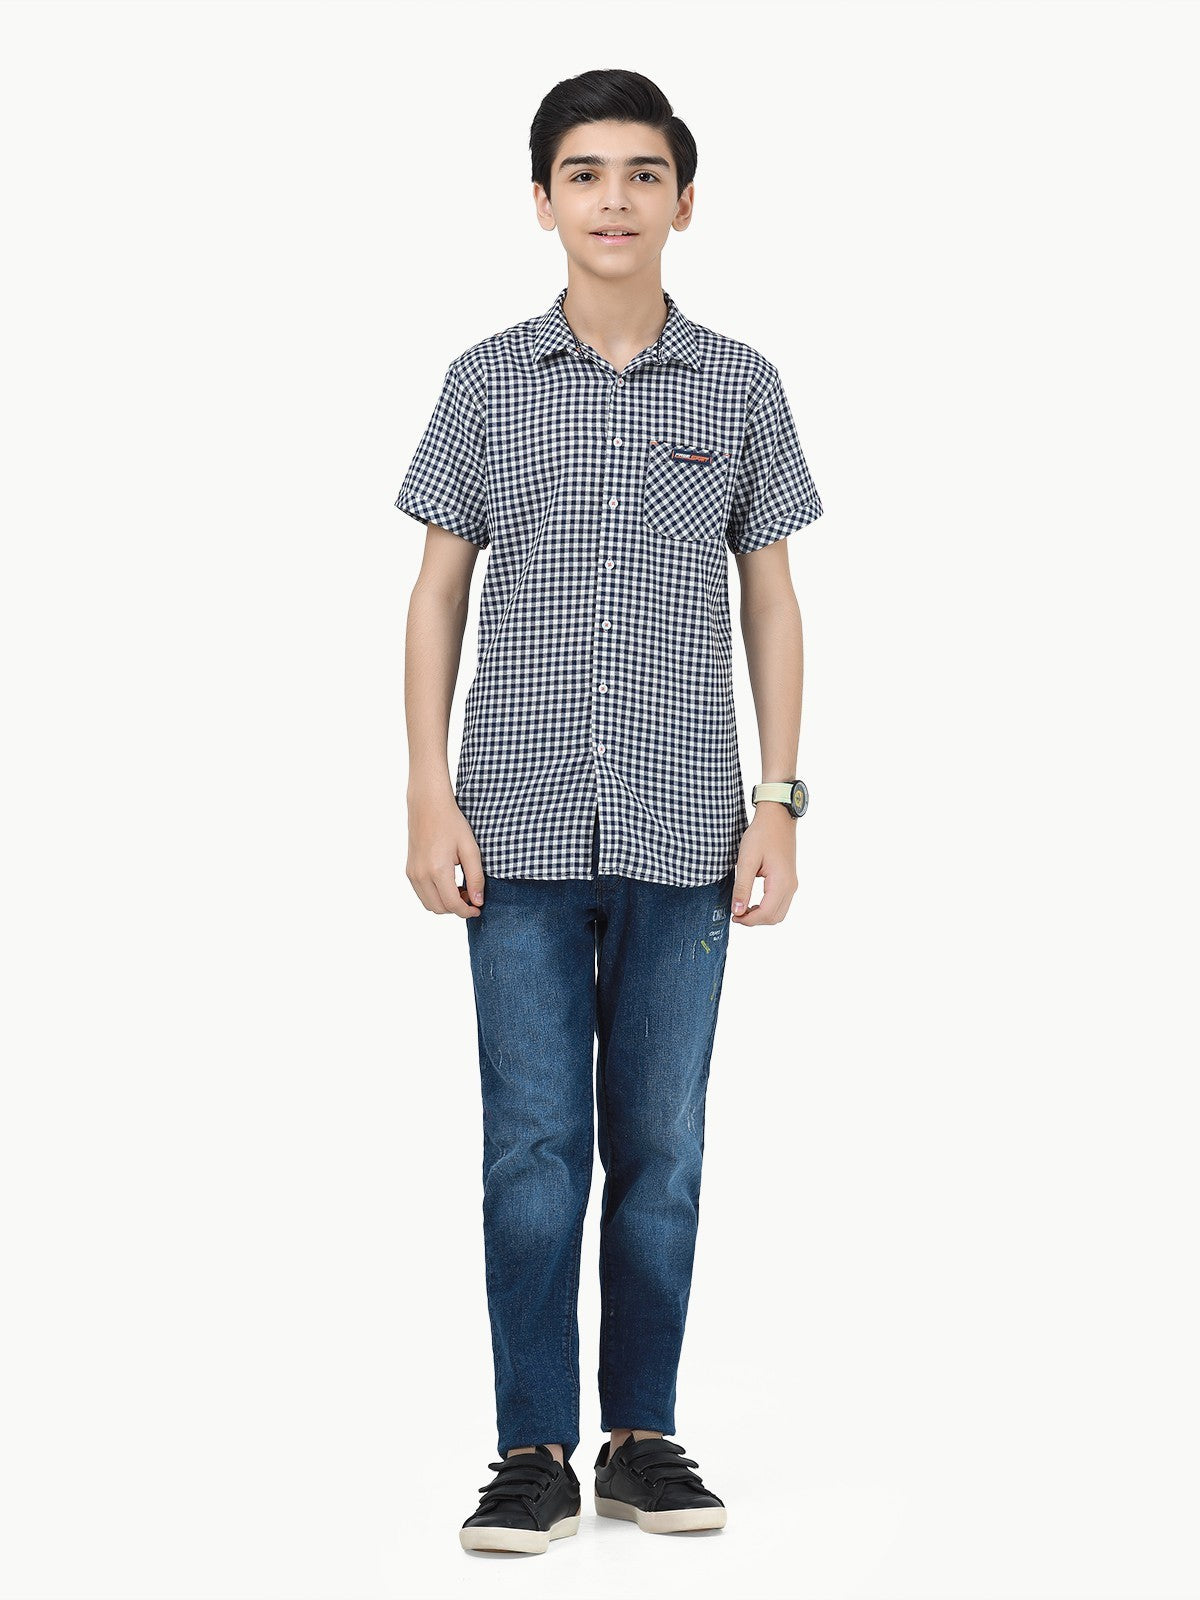 Boy's Navy & White Shirt - EBTS23-27416